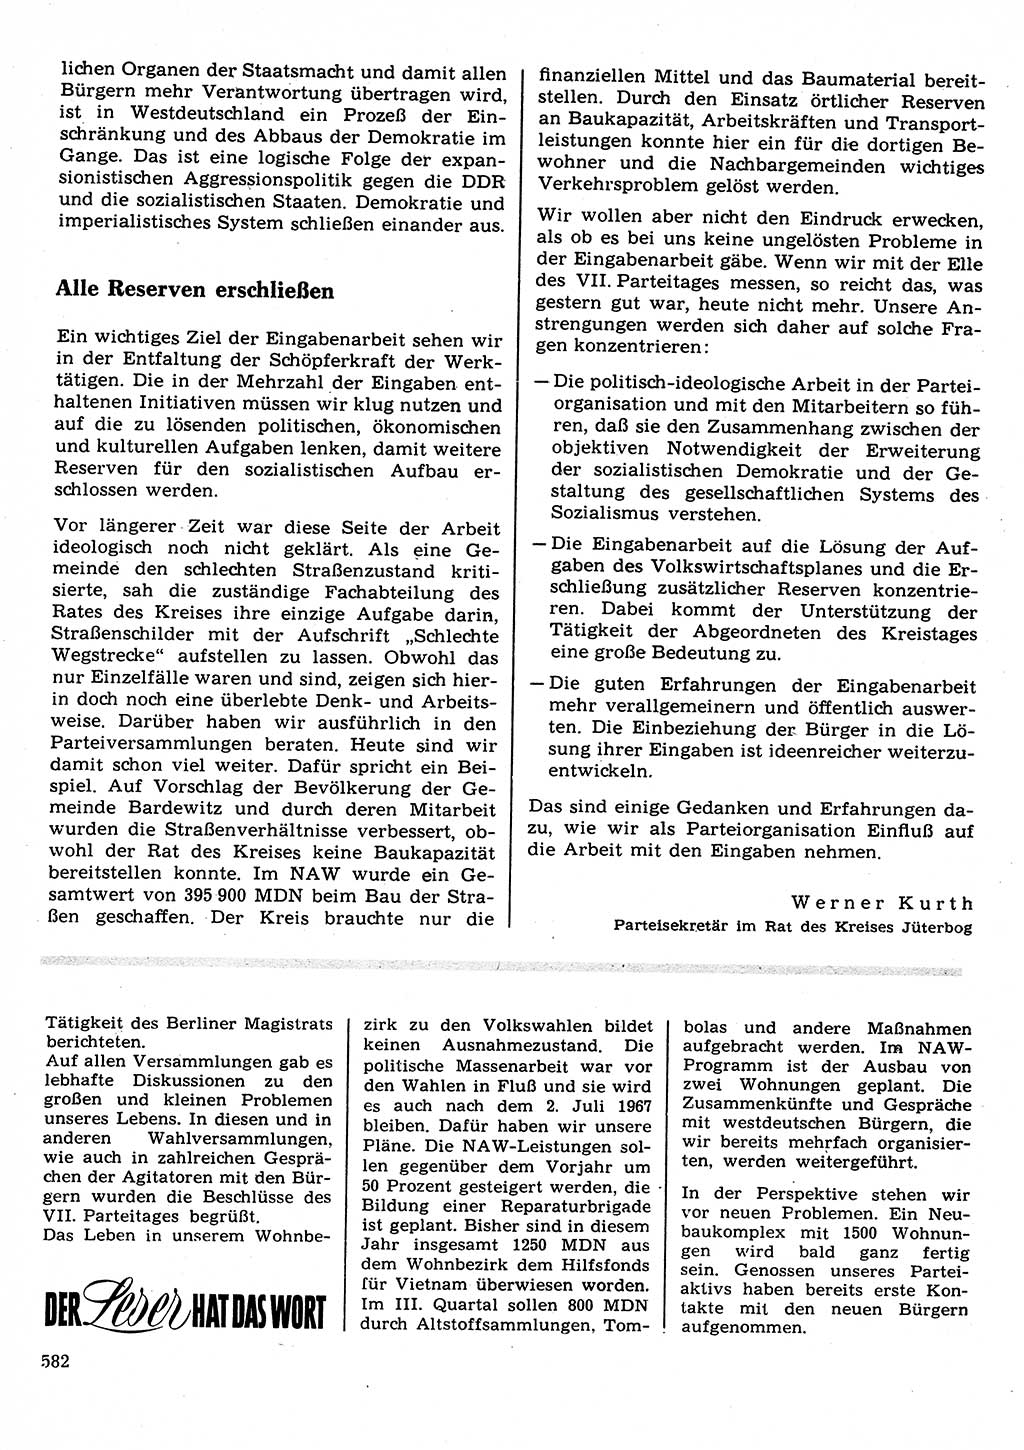 Neuer Weg (NW), Organ des Zentralkomitees (ZK) der SED (Sozialistische Einheitspartei Deutschlands) für Fragen des Parteilebens, 22. Jahrgang [Deutsche Demokratische Republik (DDR)] 1967, Seite 582 (NW ZK SED DDR 1967, S. 582)